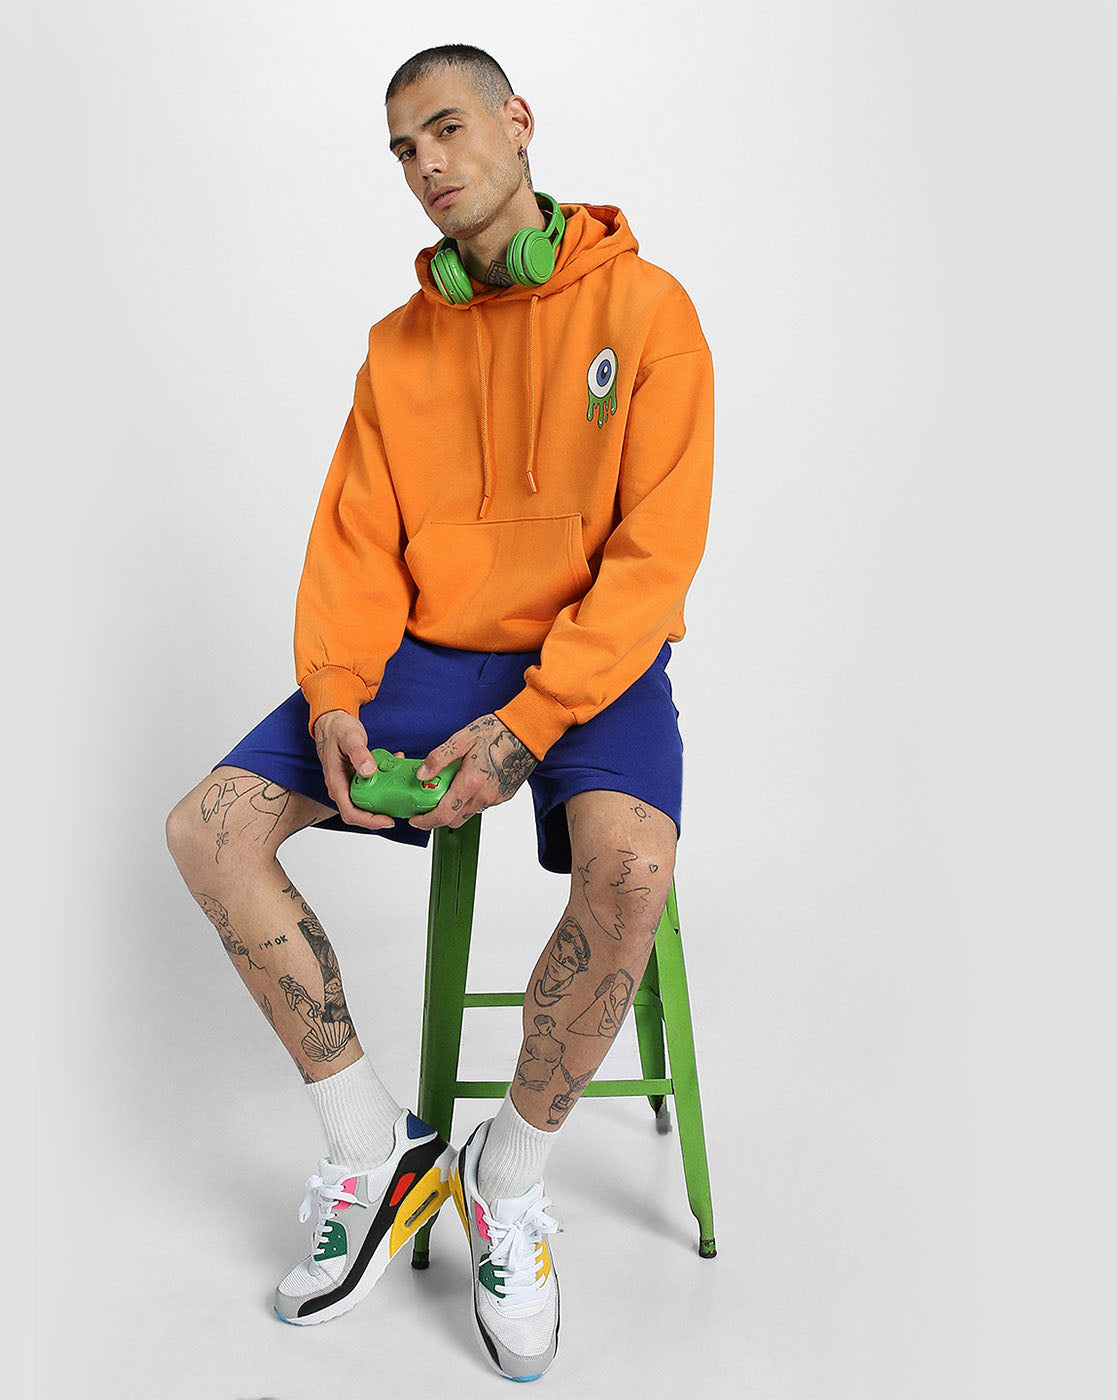 Eyes on Style: Men's Orange Hoodie with Eye Print Veirdo